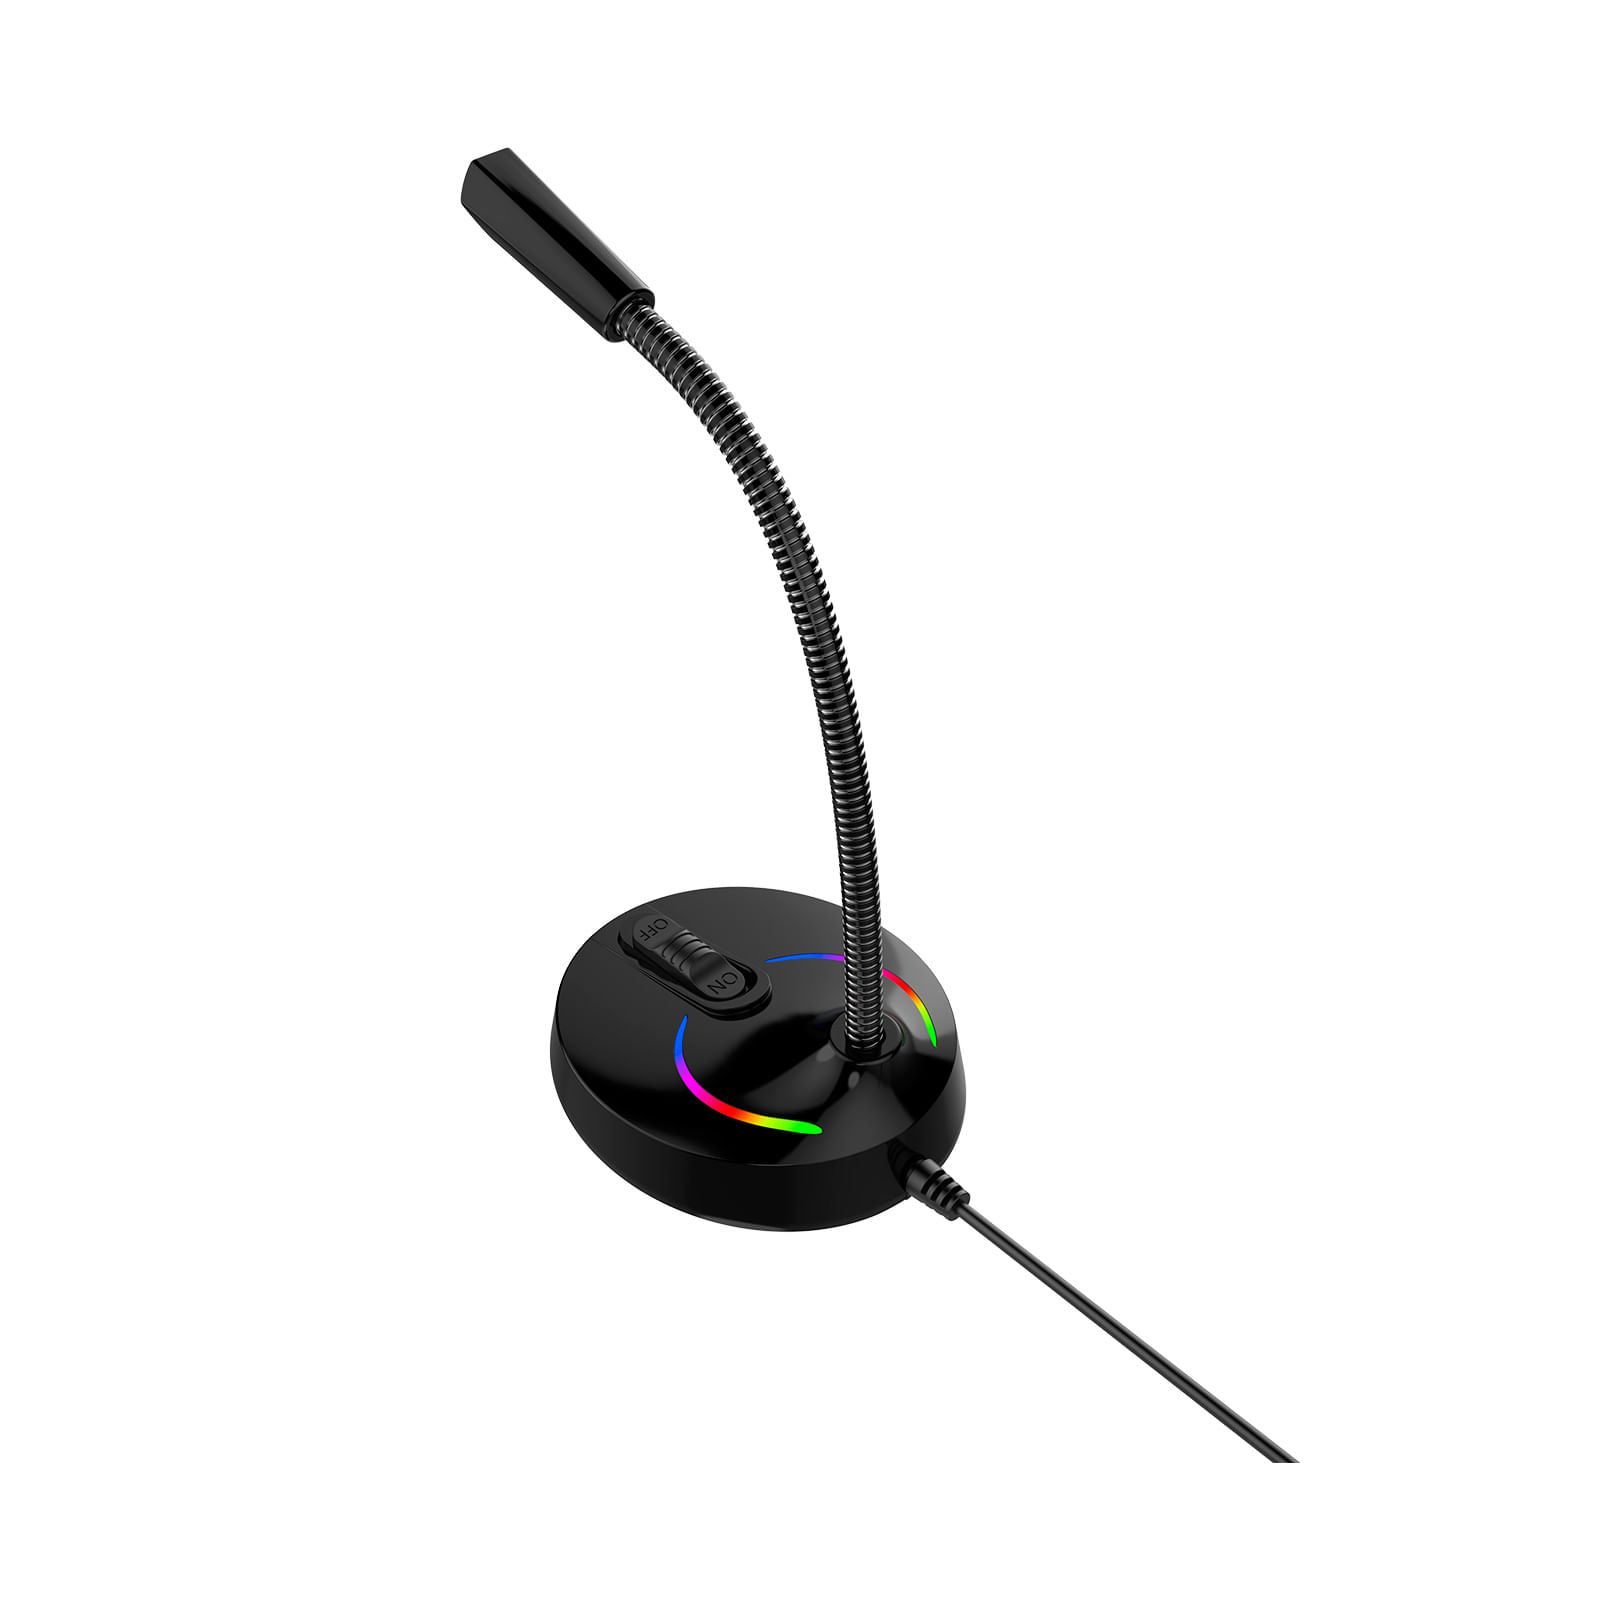 Micrófono gaming GK59 negro con luz